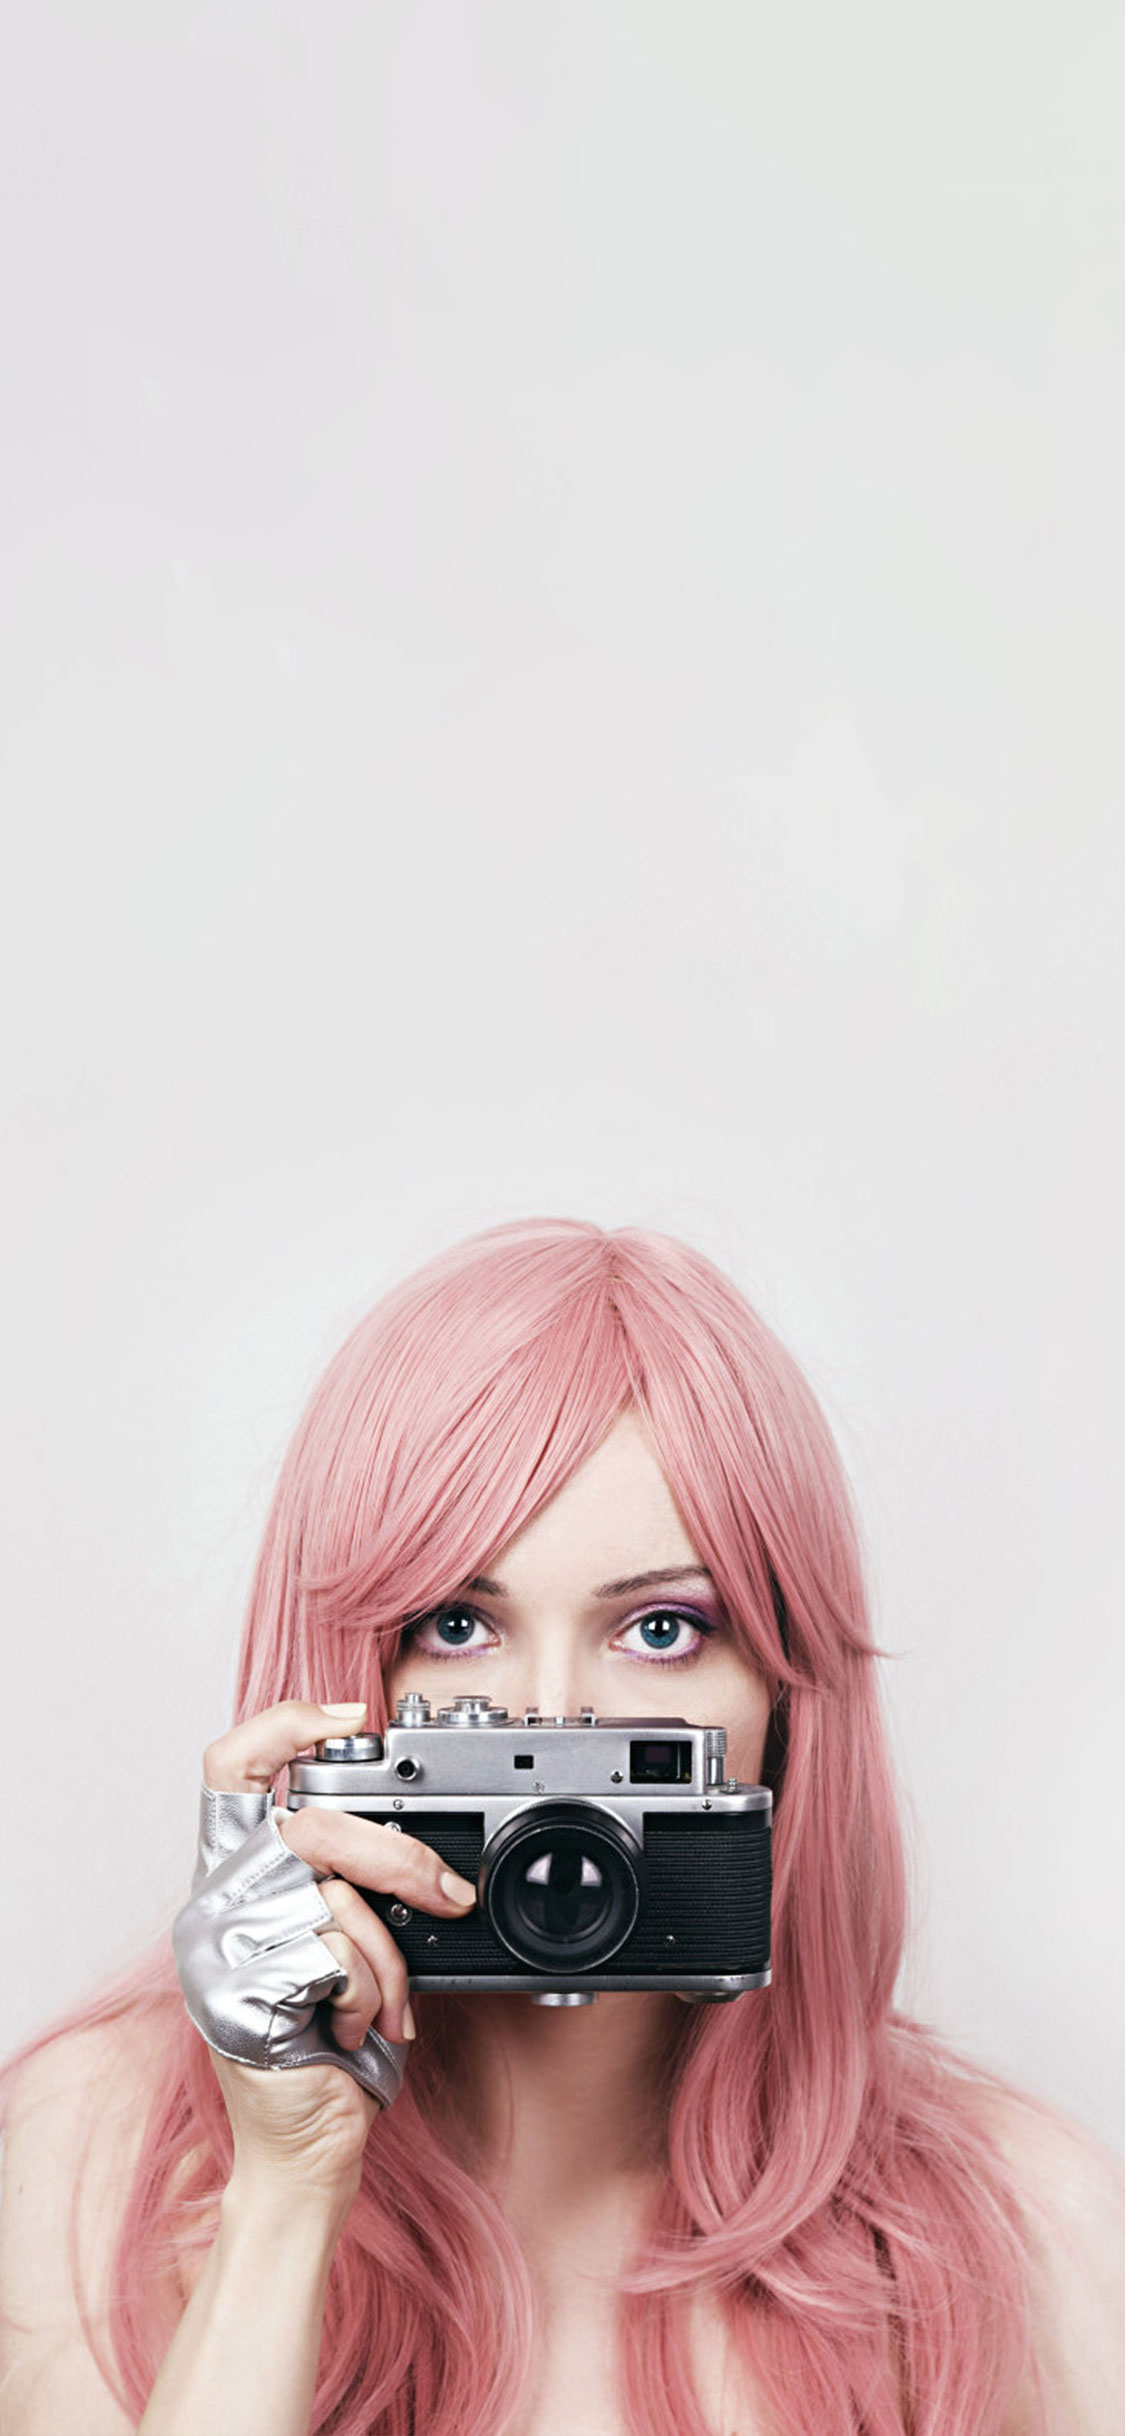 sfondi carini per ragazze,capelli,rosa,fotografia,biondo,fotografia